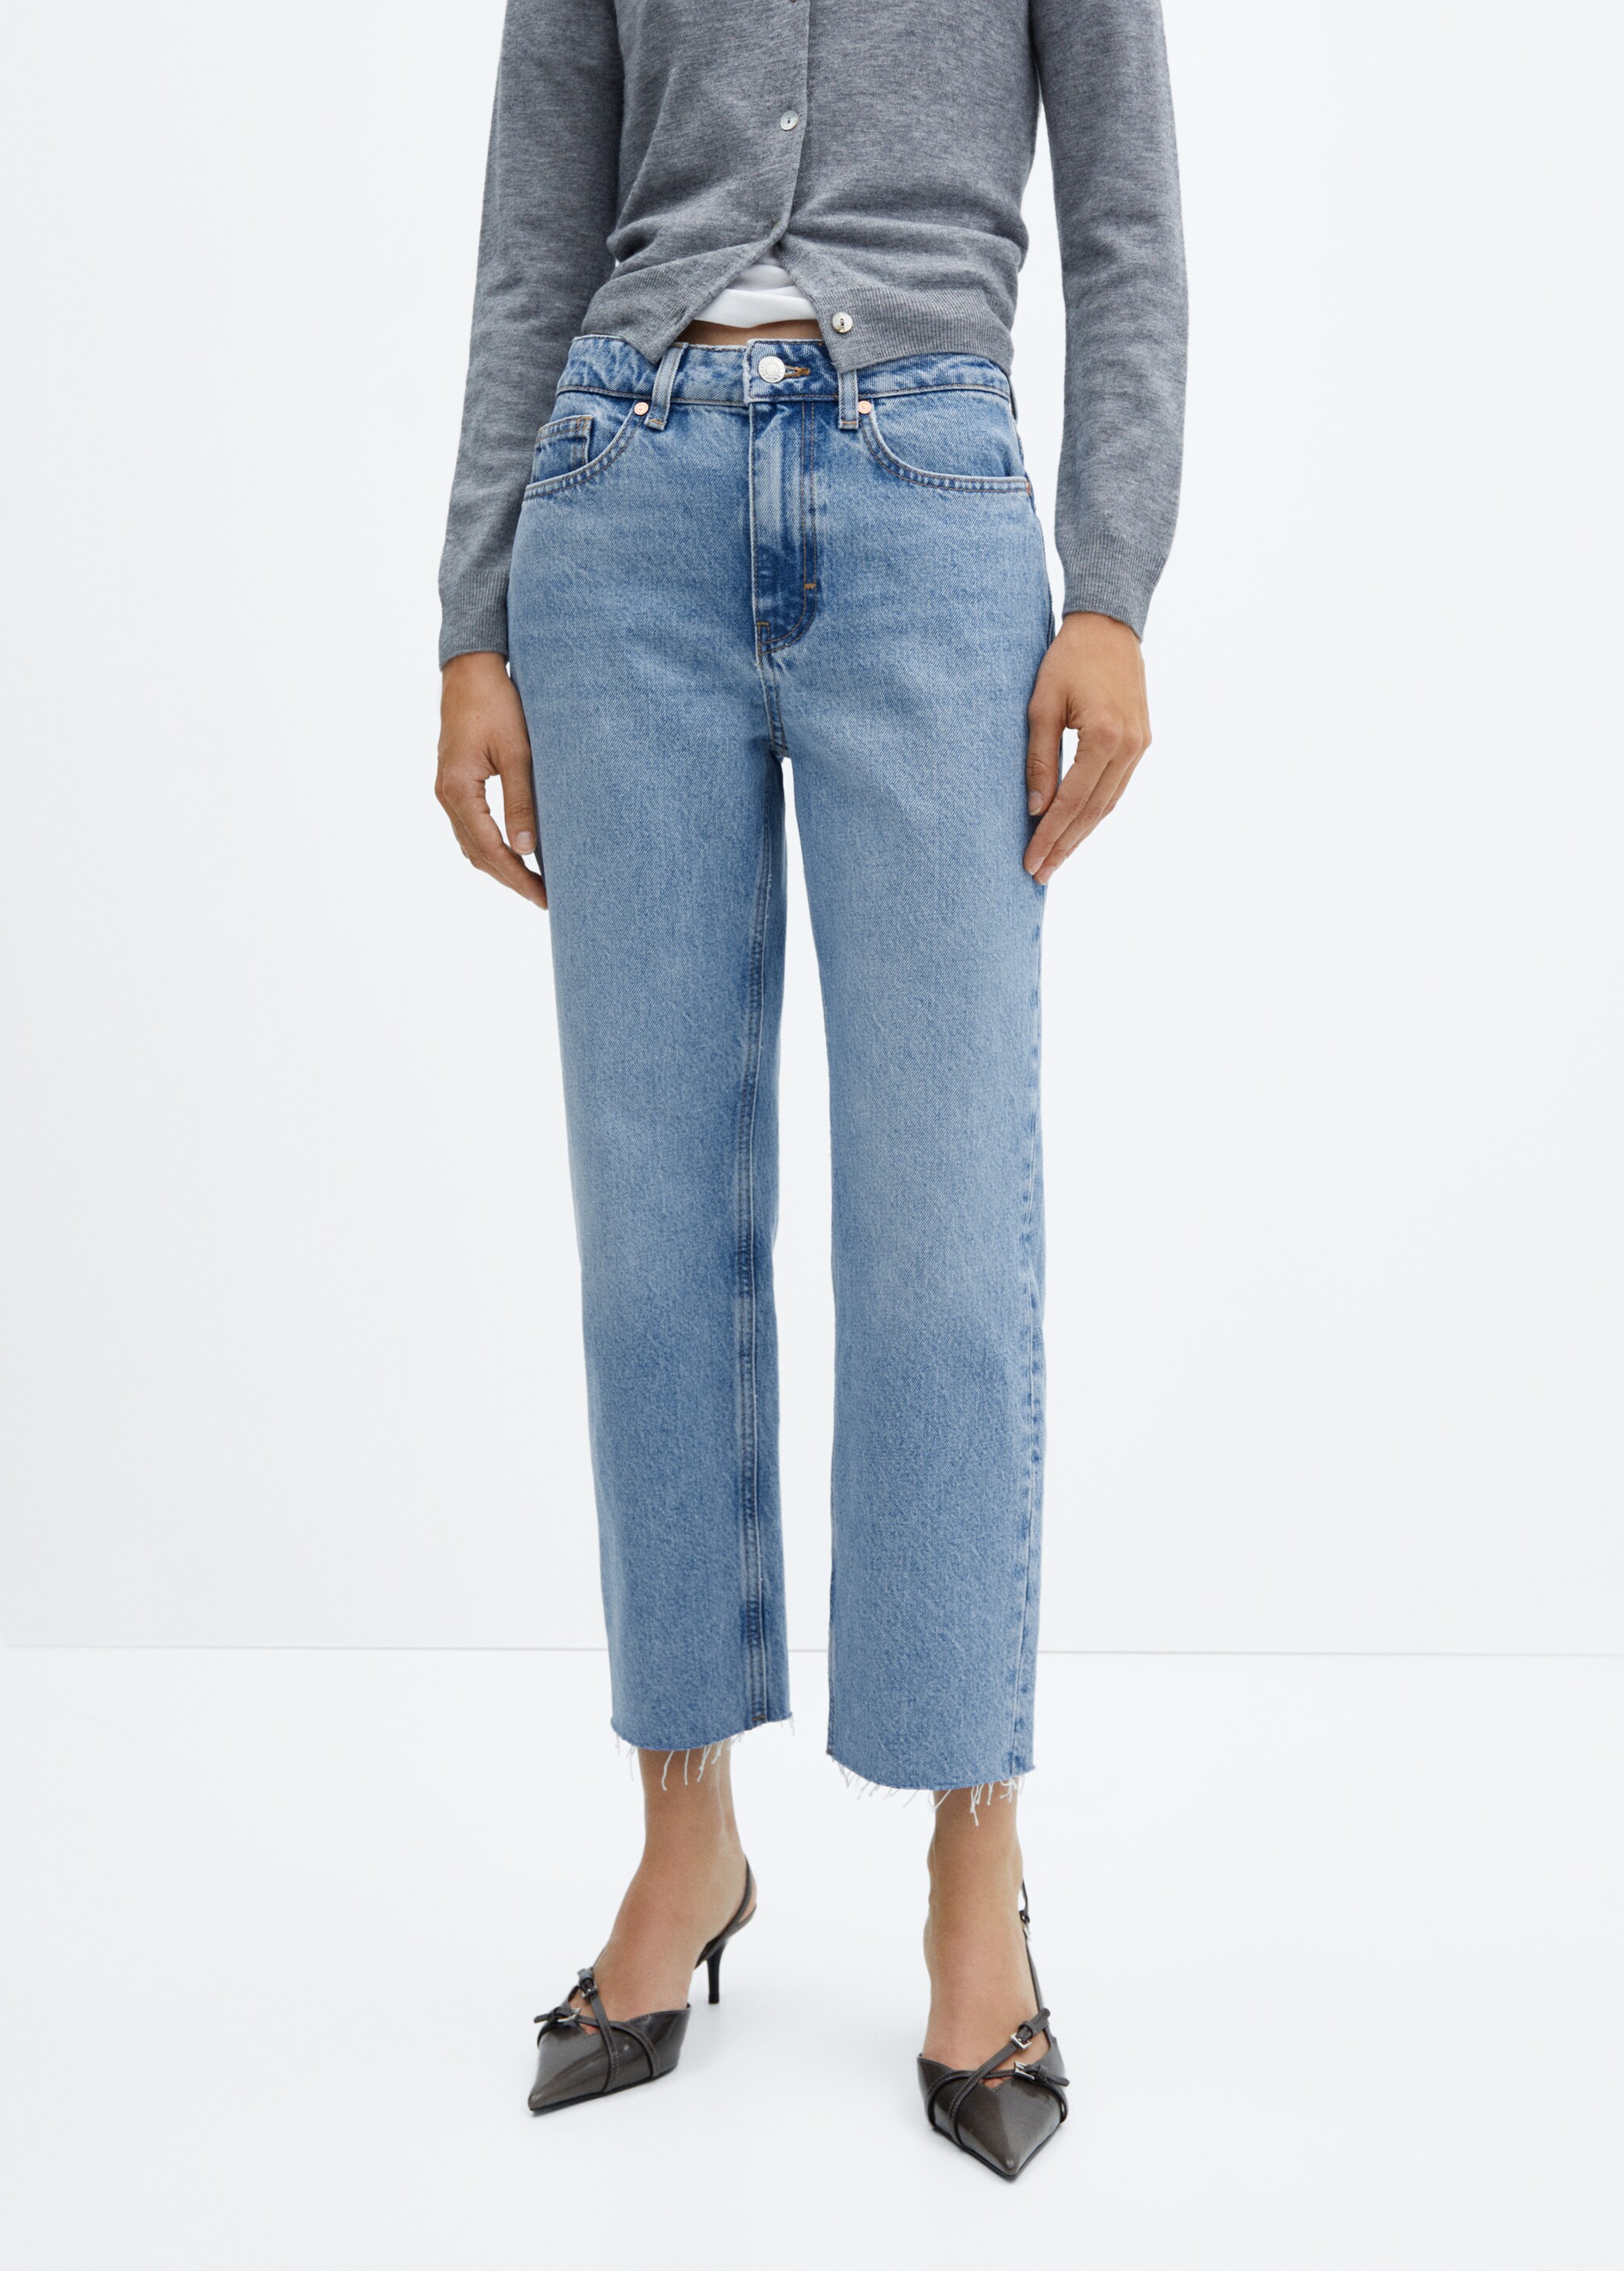 Rovné džíny s vysokým pasem - Náhled ve středové rovině